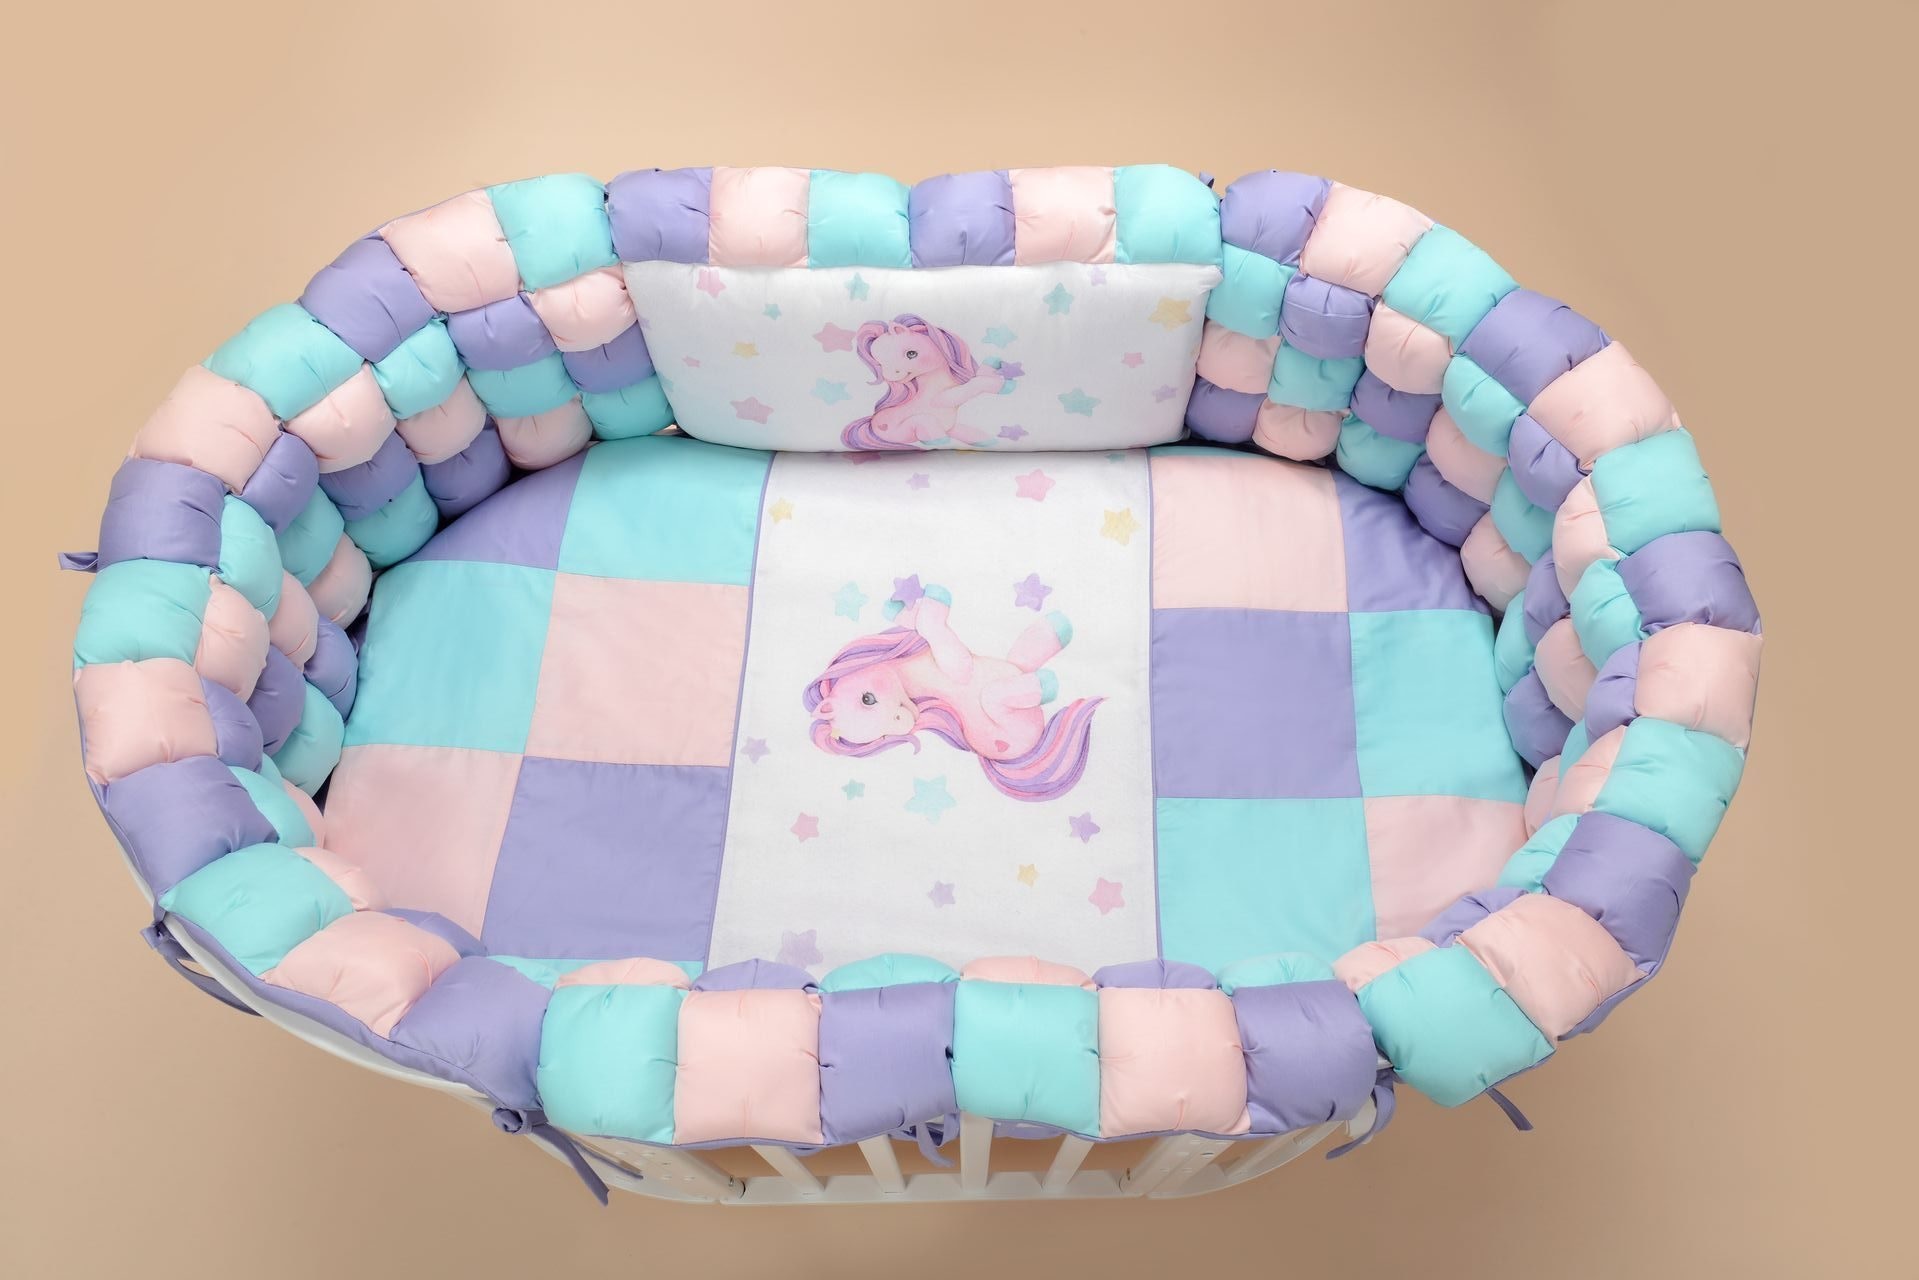 Комплект для детской кровати "Funny friends" лаванда пони. Фото N2